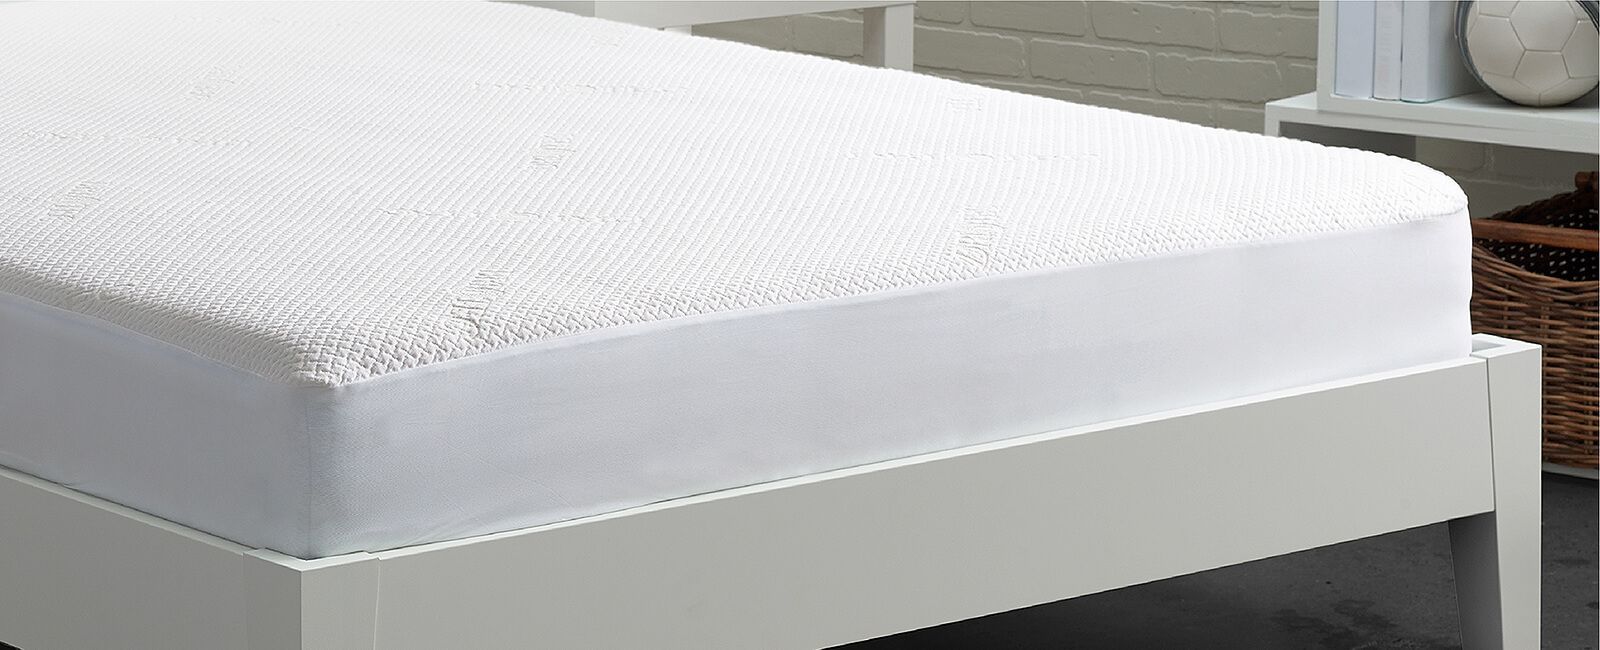 bedgear dri-tec mattress protector stores